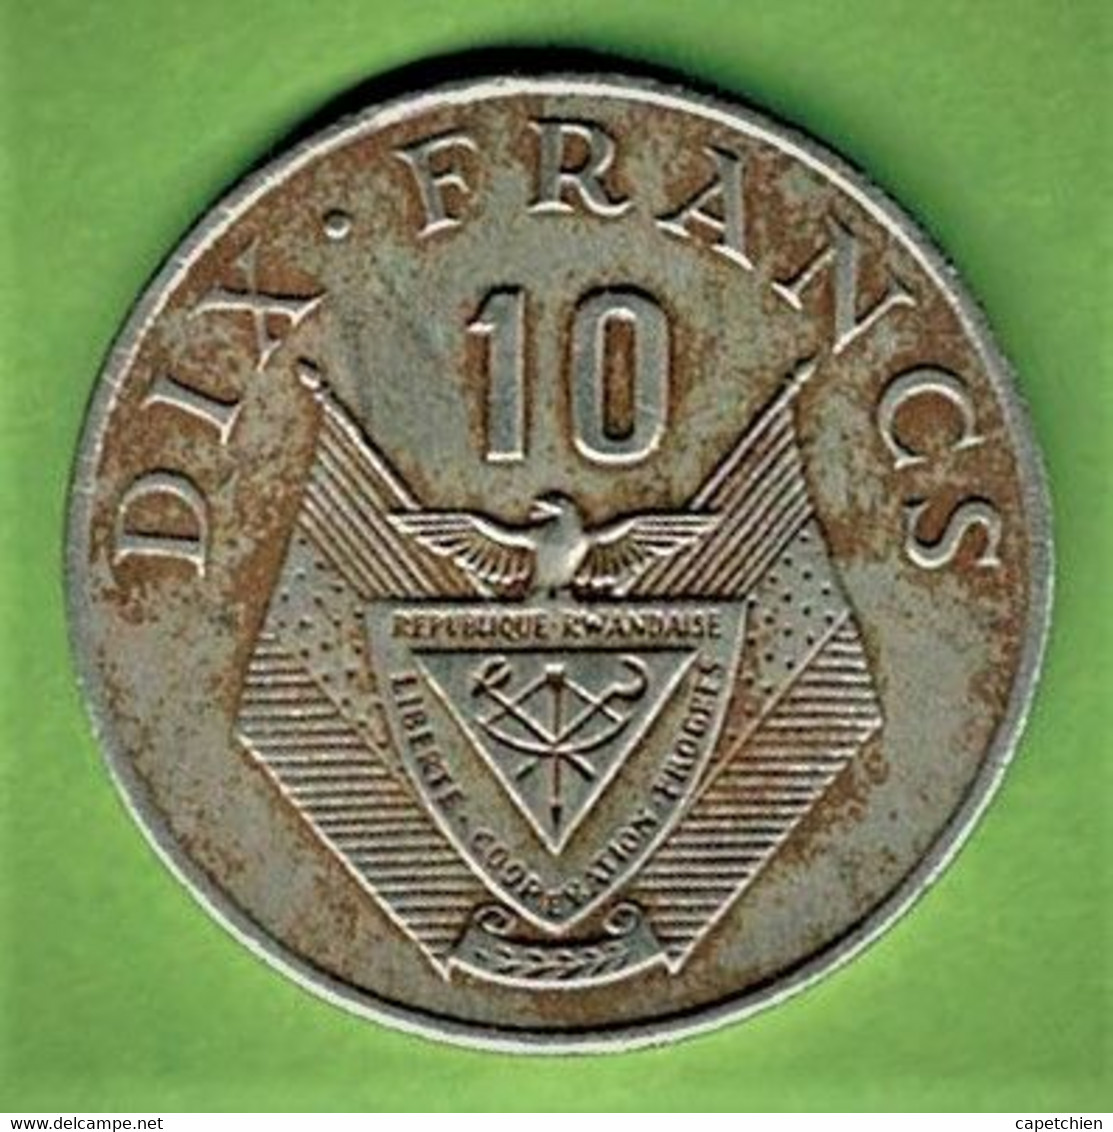 RWANDA / 10 FRANCS / 1974 - Rwanda